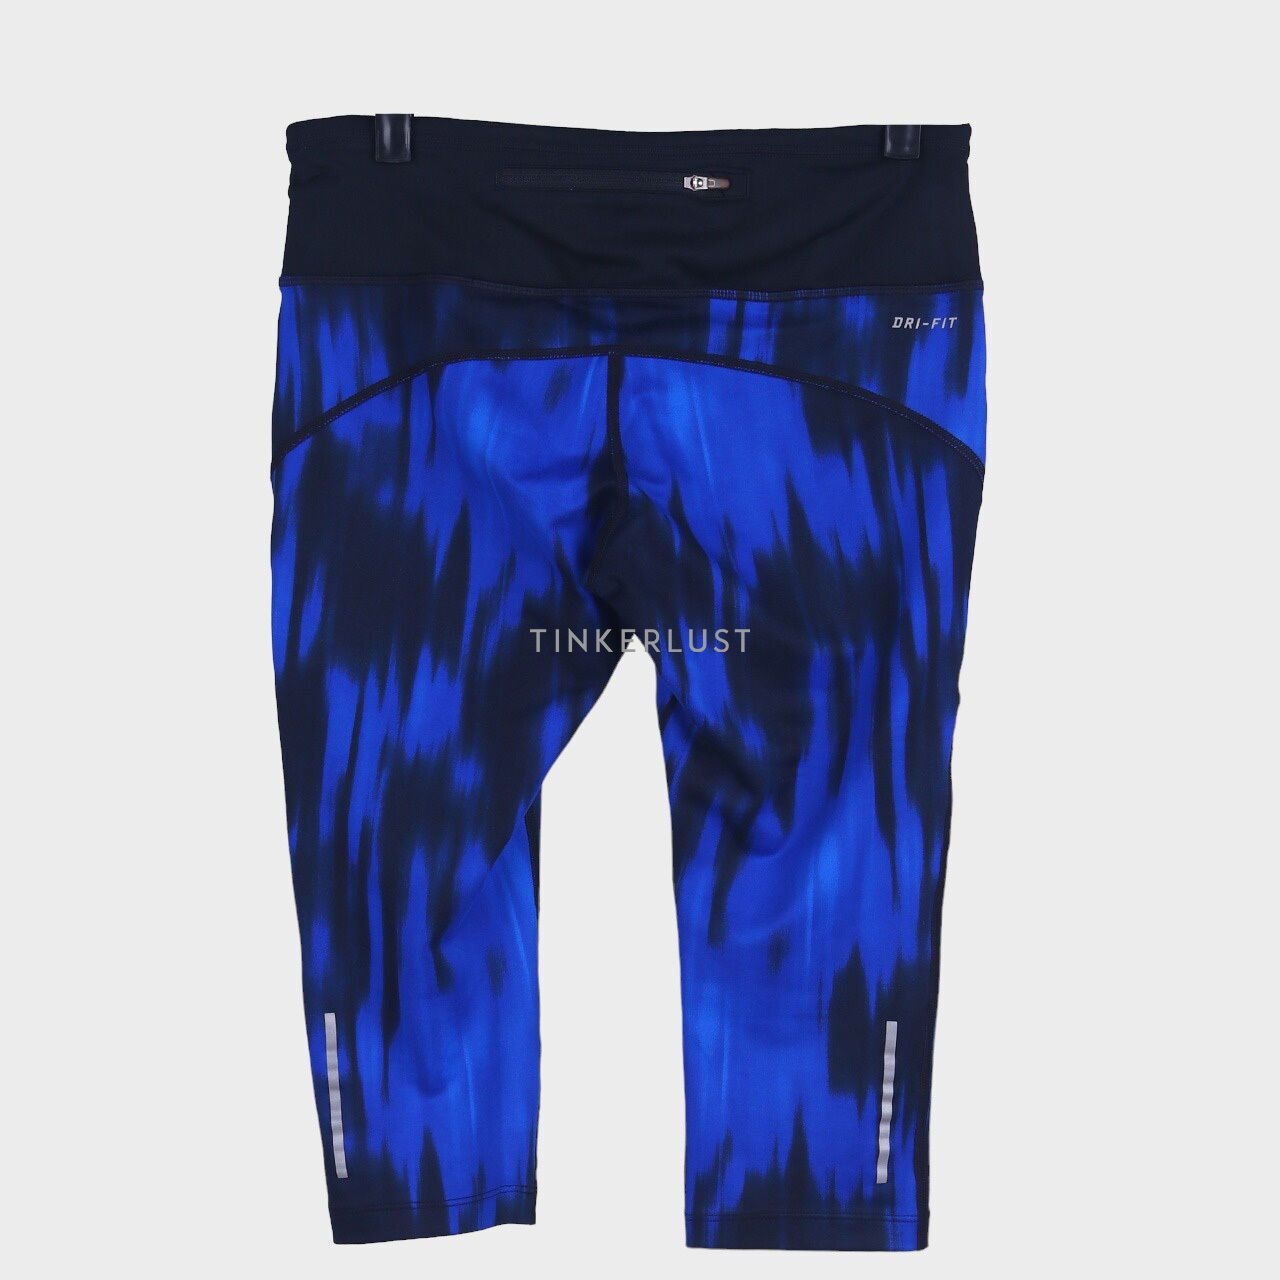 Nike Blue & Black Pants